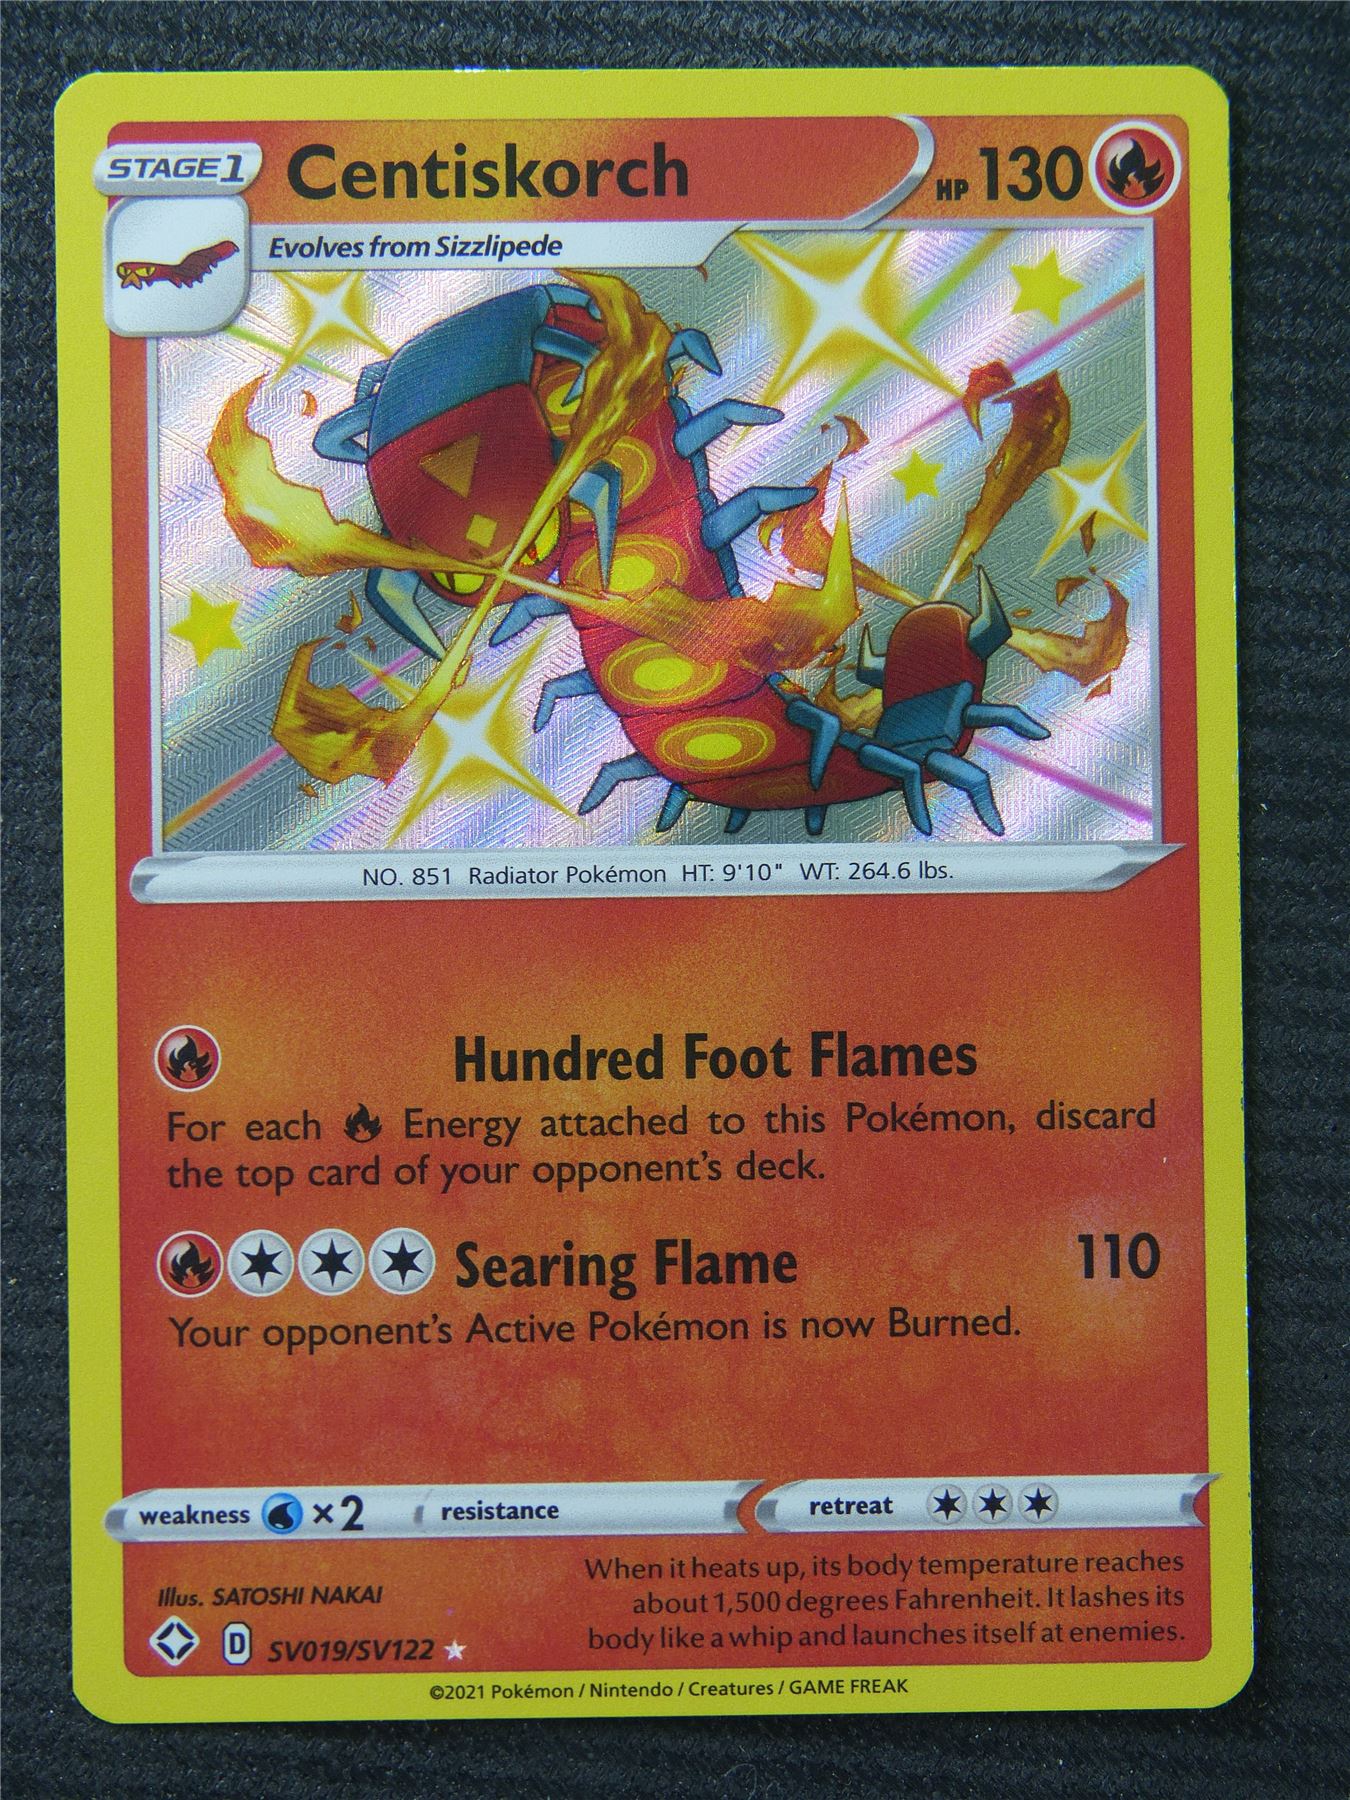 Centiskorch SV019/SV122 Holo Shiny Vault - Pokemon Card #8F2